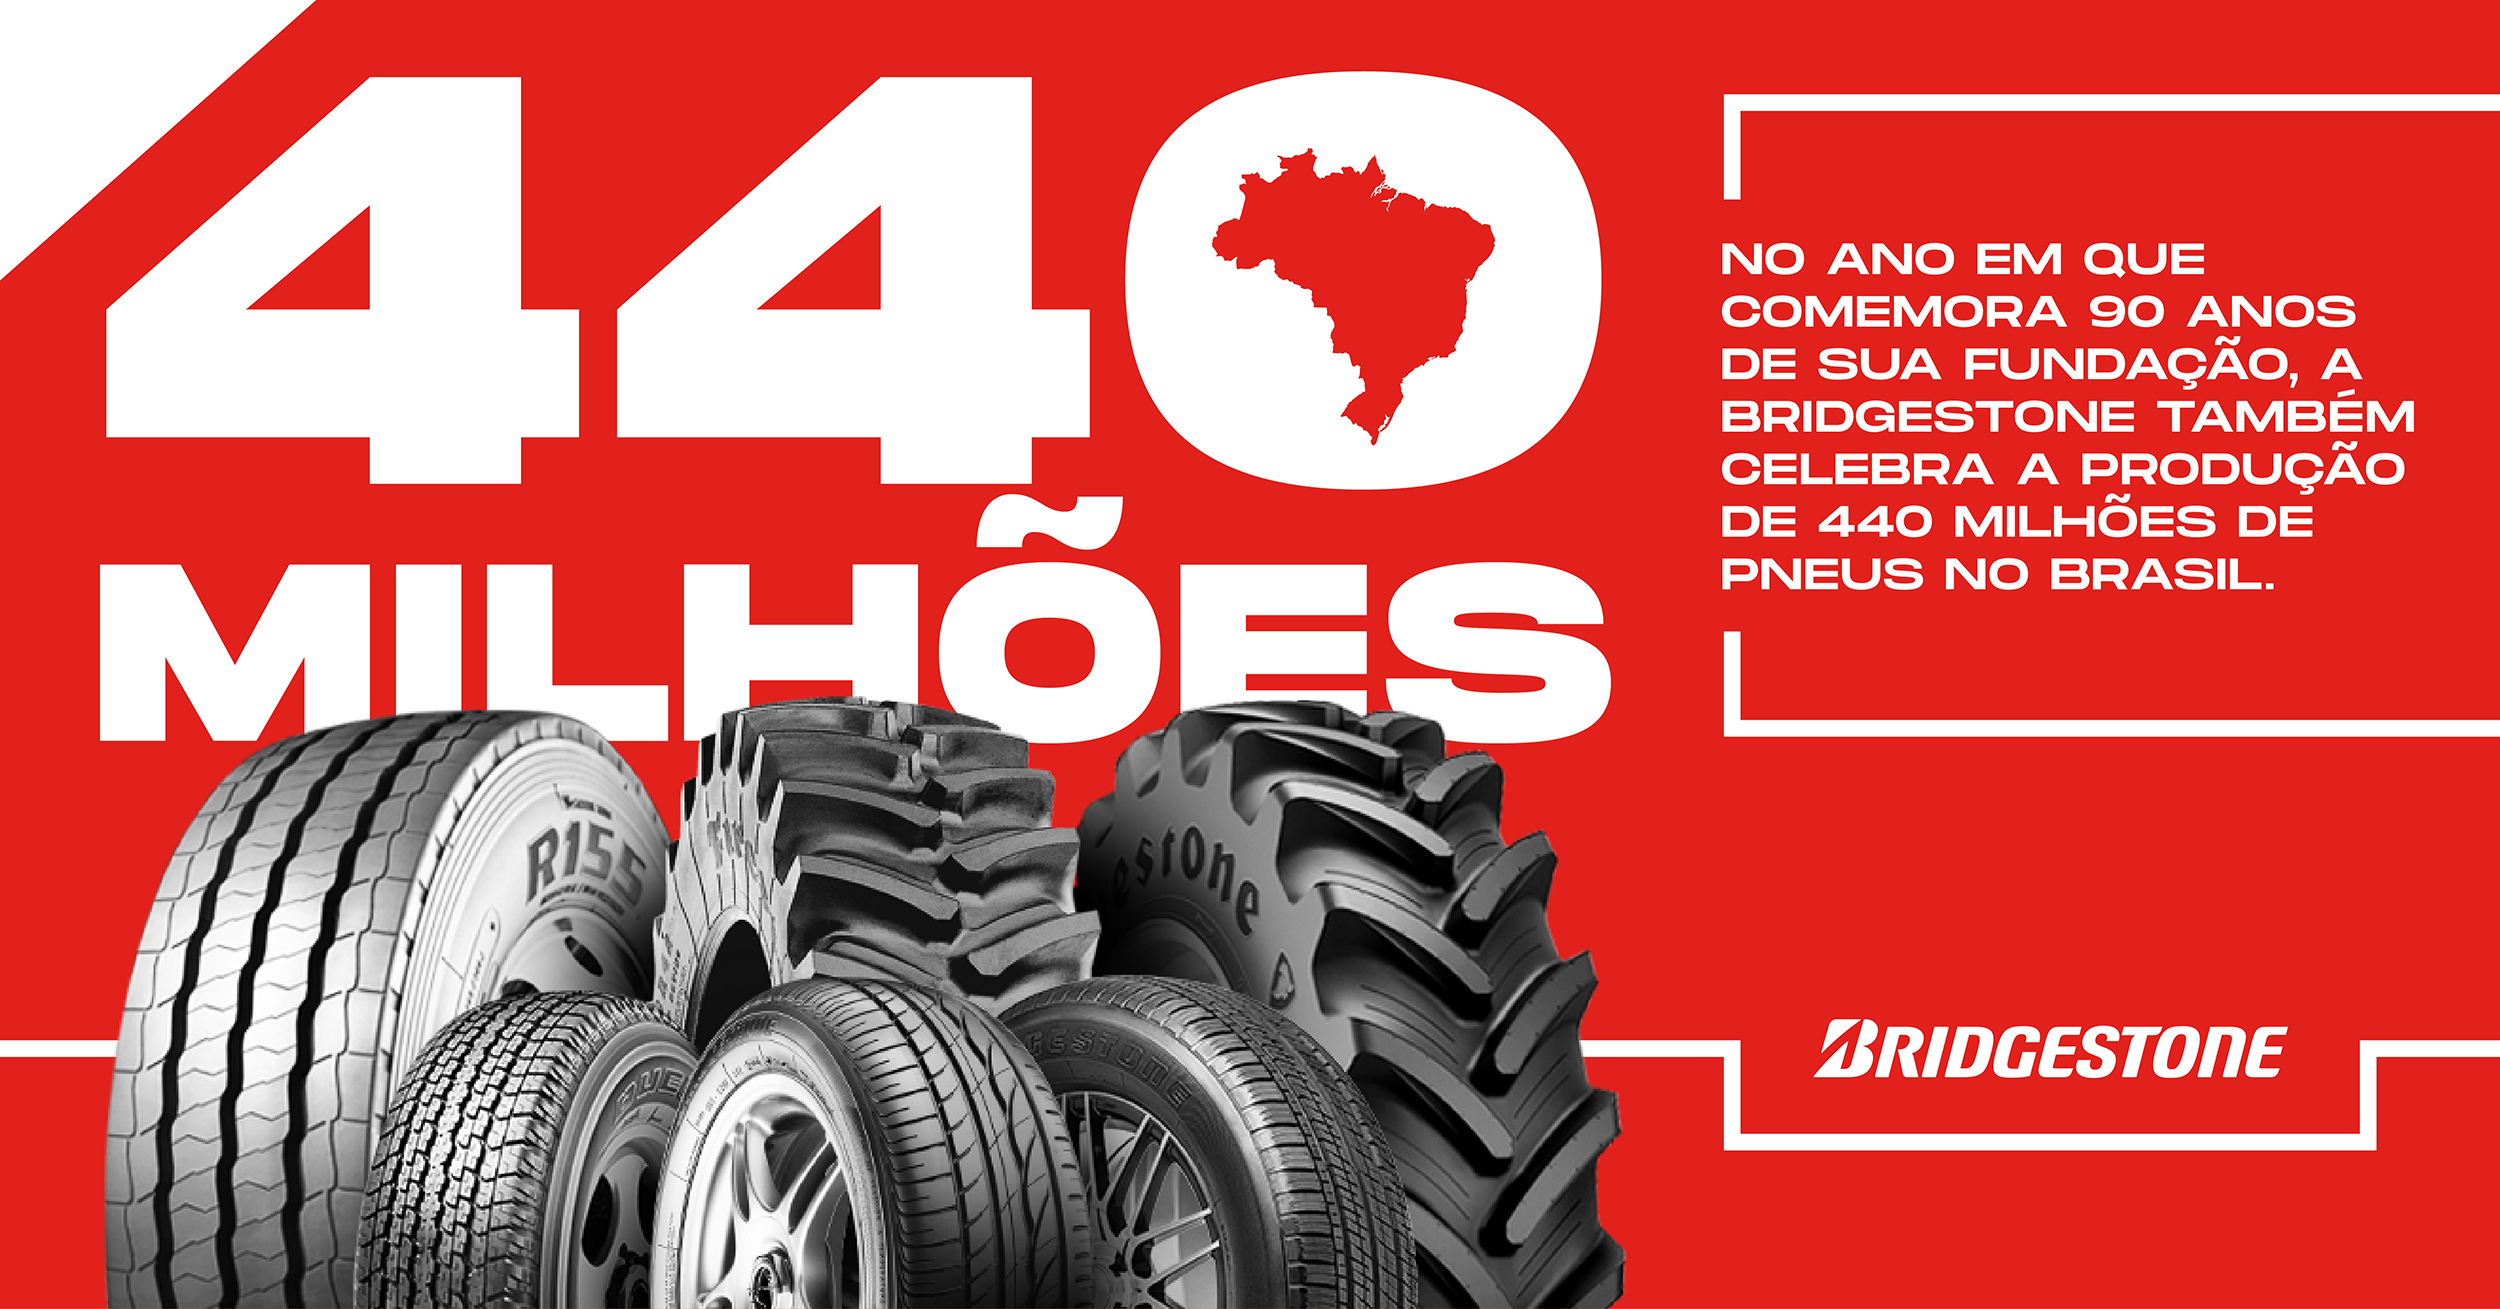  A Bridgestone celebrou a marca de 440 milhões de pneus produzidos no Brasil